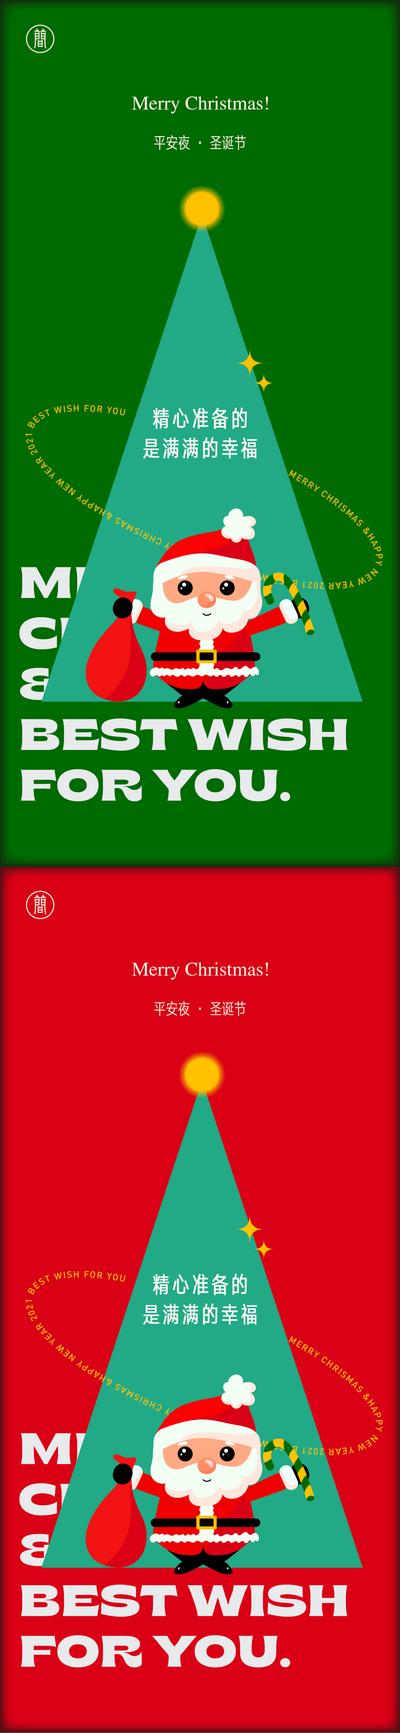 【南门网】海报 西方国际节日 房地产 平安夜 圣诞节 圣诞老人 卡通 系列